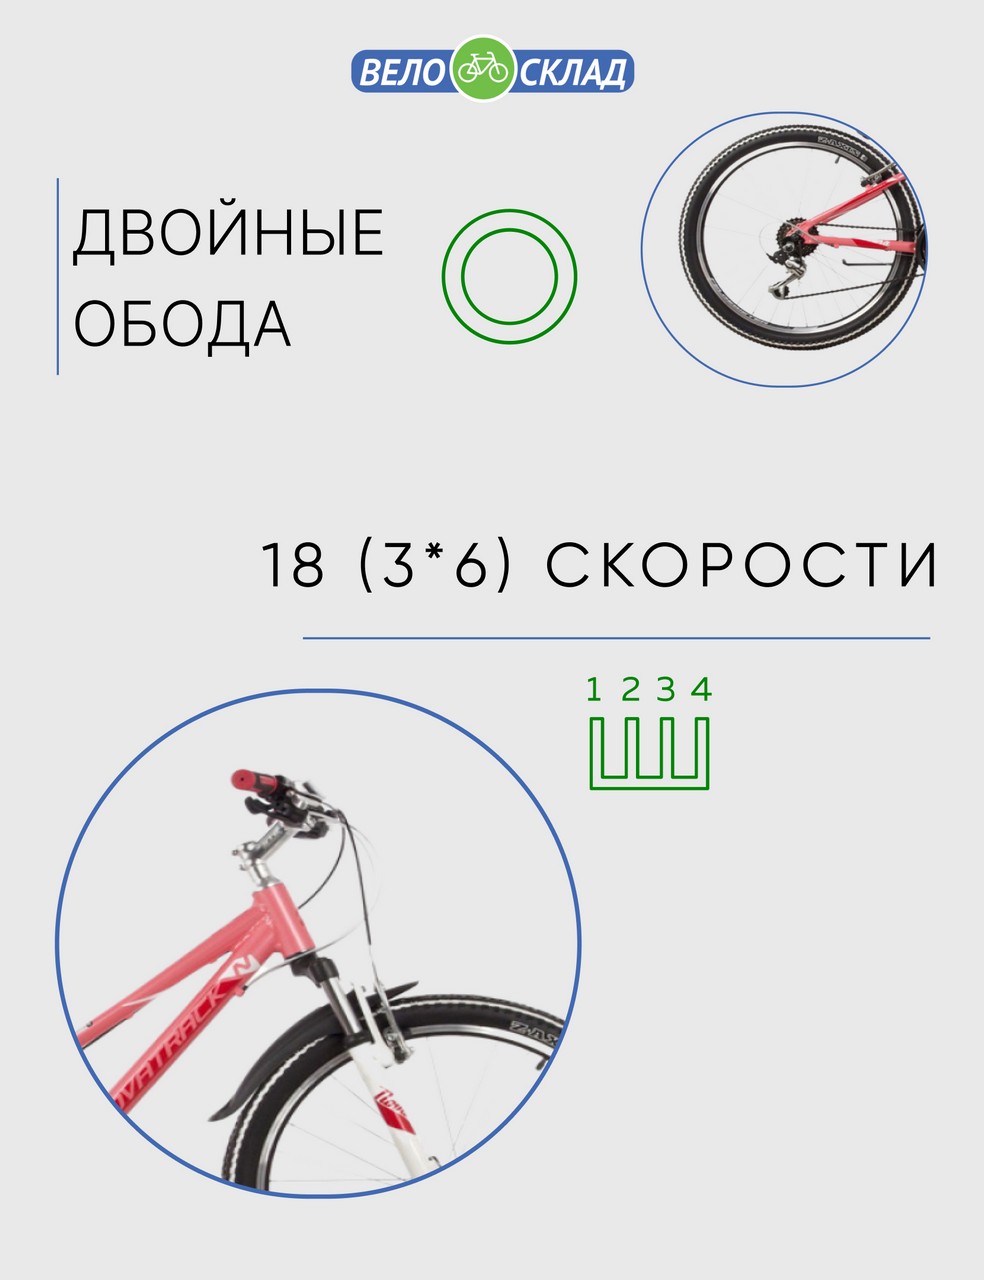 Подростковый велосипед Novatrack Novara 24, год 2022, цвет Оранжевый, ростовка 11